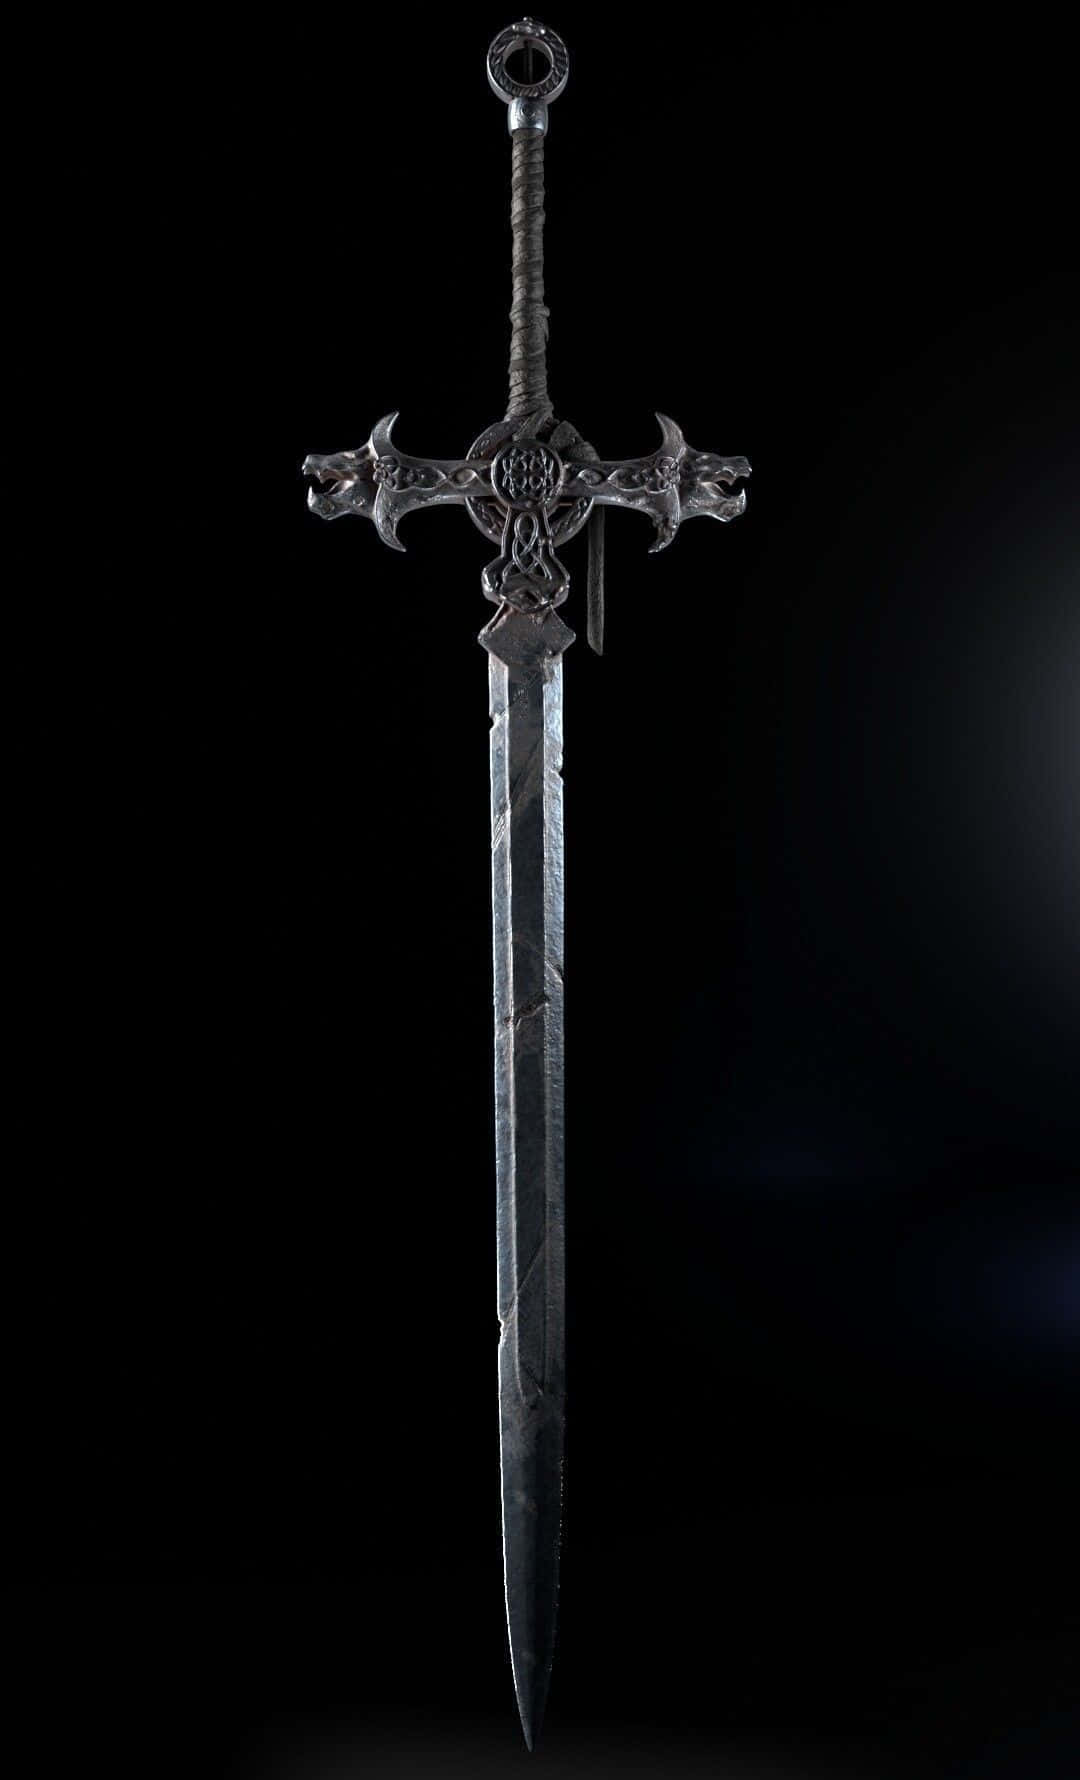 Descripciónla Mítica Espada Excalibur En La Piedra. Fondo de pantalla